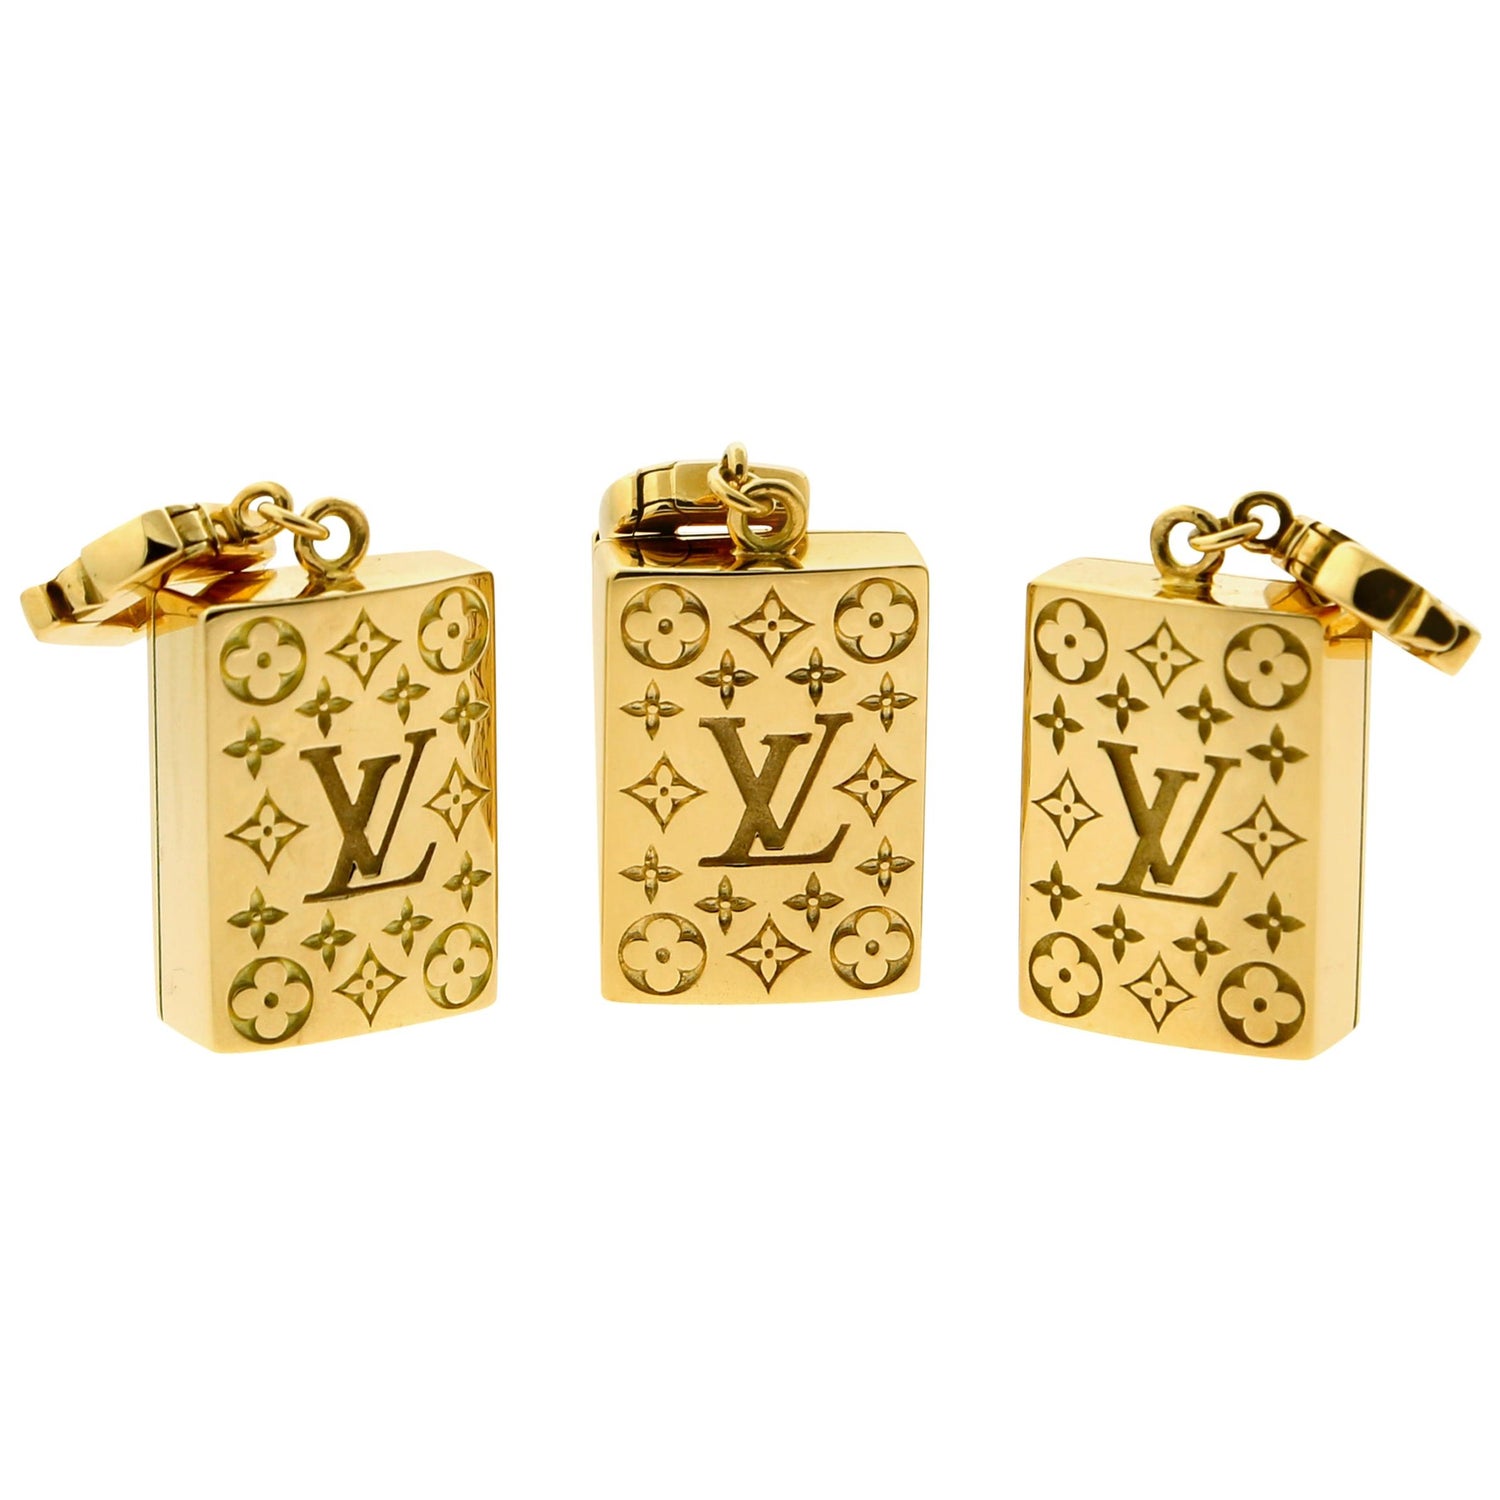 Monogram bracelet Louis Vuitton Gold in Metal - 31953744